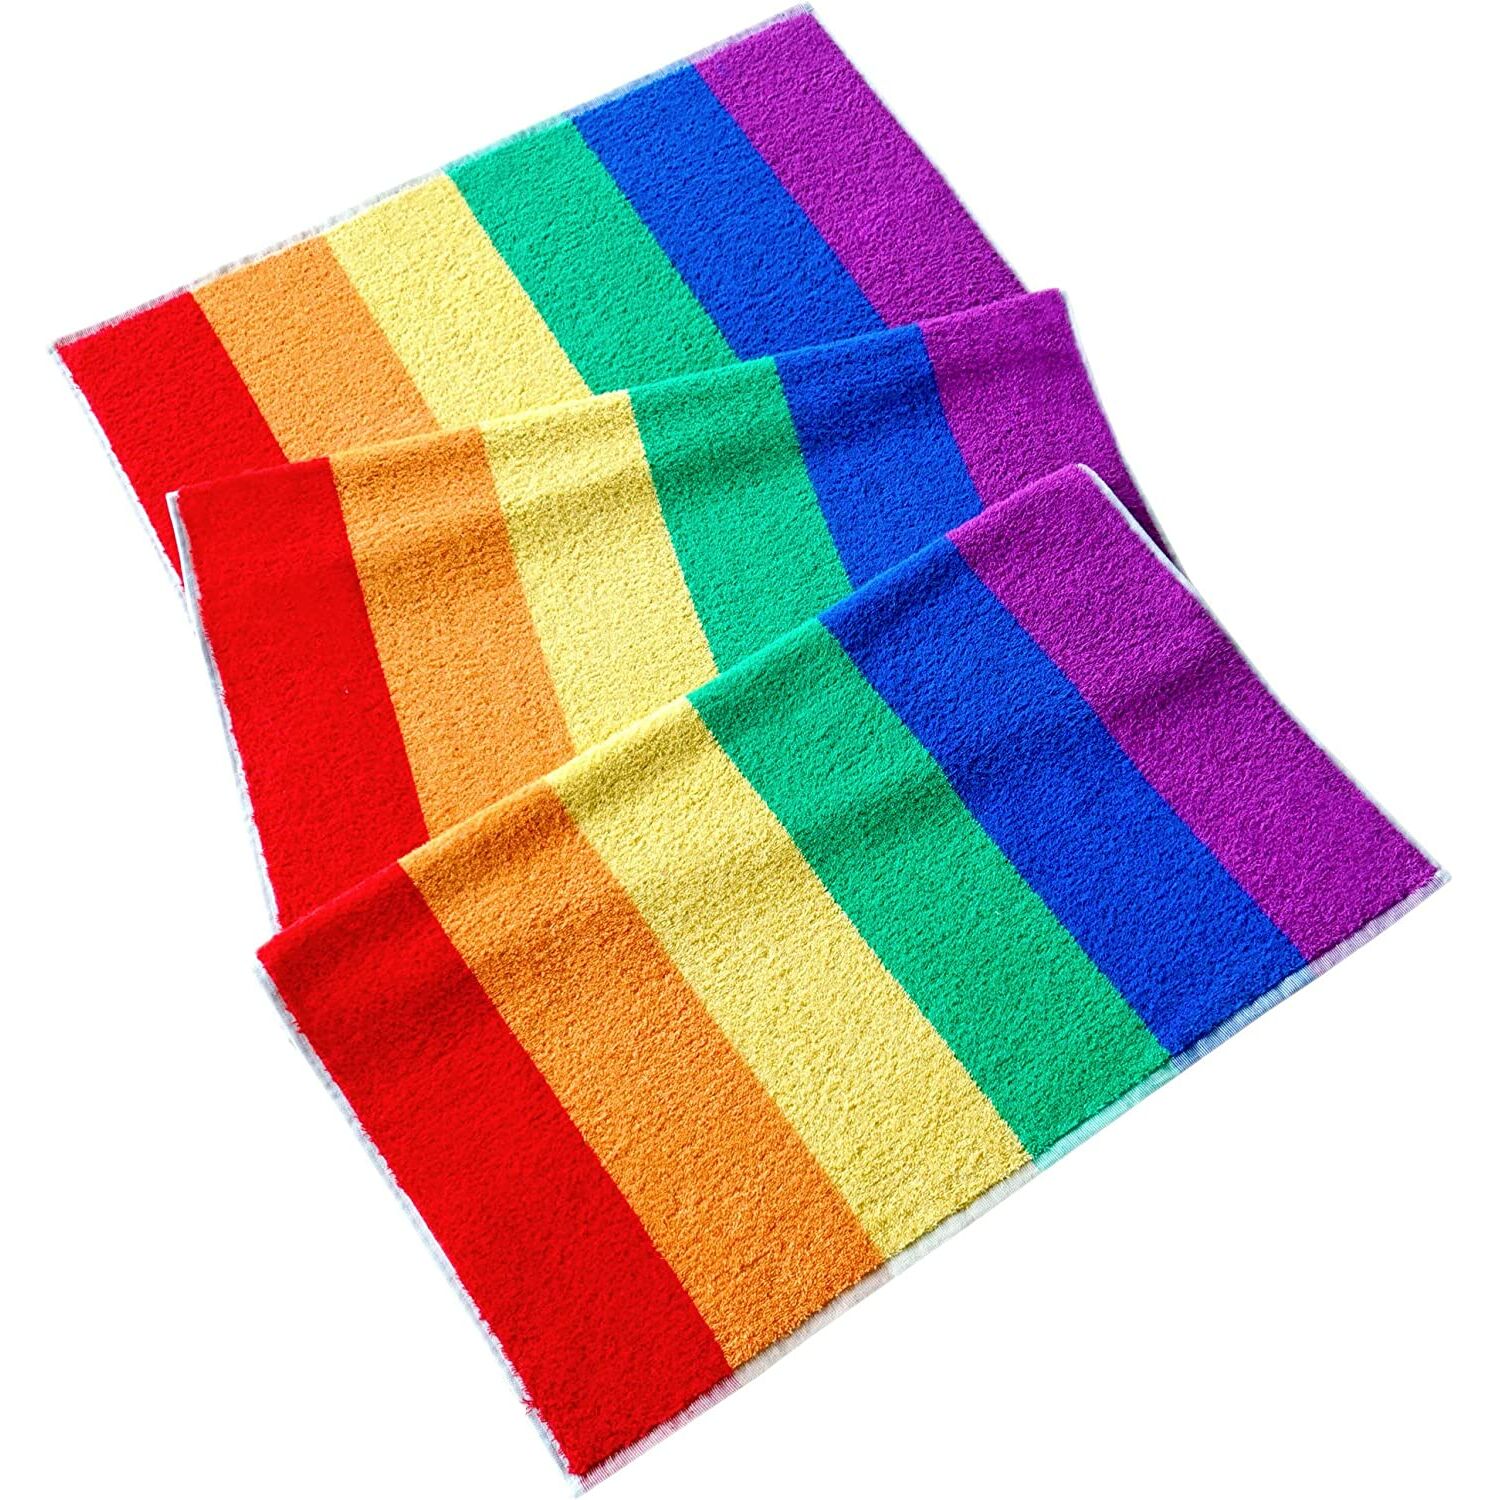 Handtücher :: Duschtuch 70x140 cm, großes Handtuch bunt gestreift,  Badehandtuch Frottee mit Regenbogen Optik